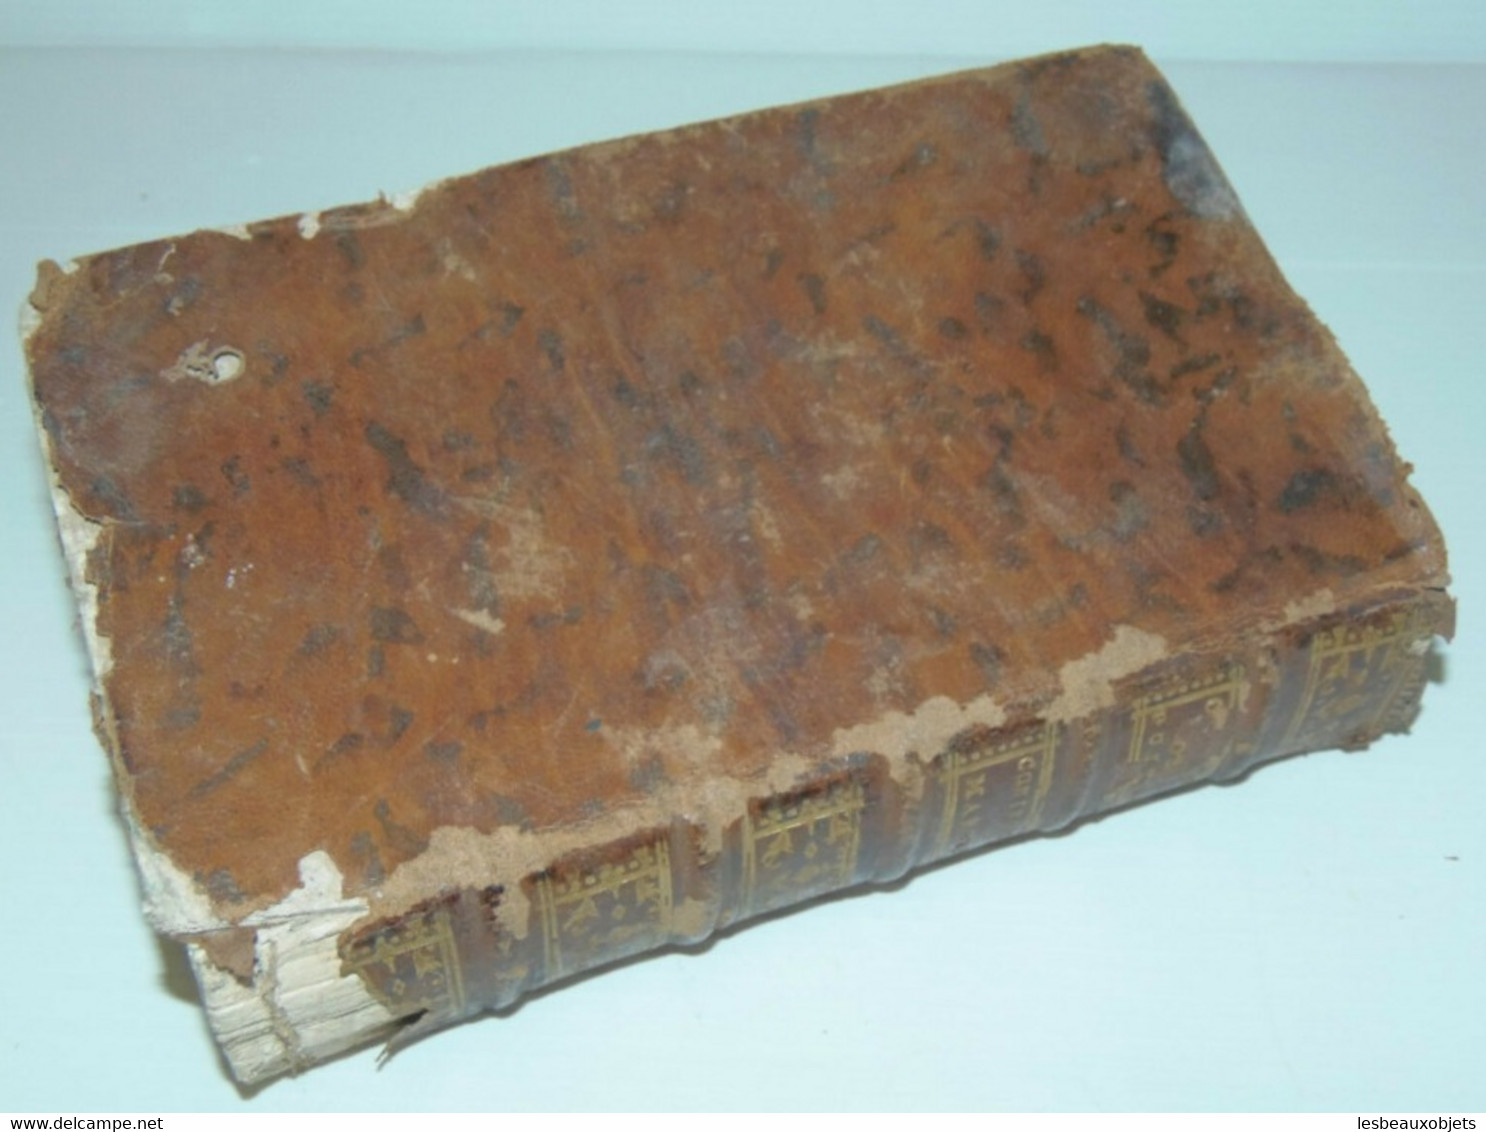 LIVRE TRAITE des CONTRATS MARITIMES et CHEPTELS 1775 XVIIIe MARINE BATEAUX collection bibliothèque